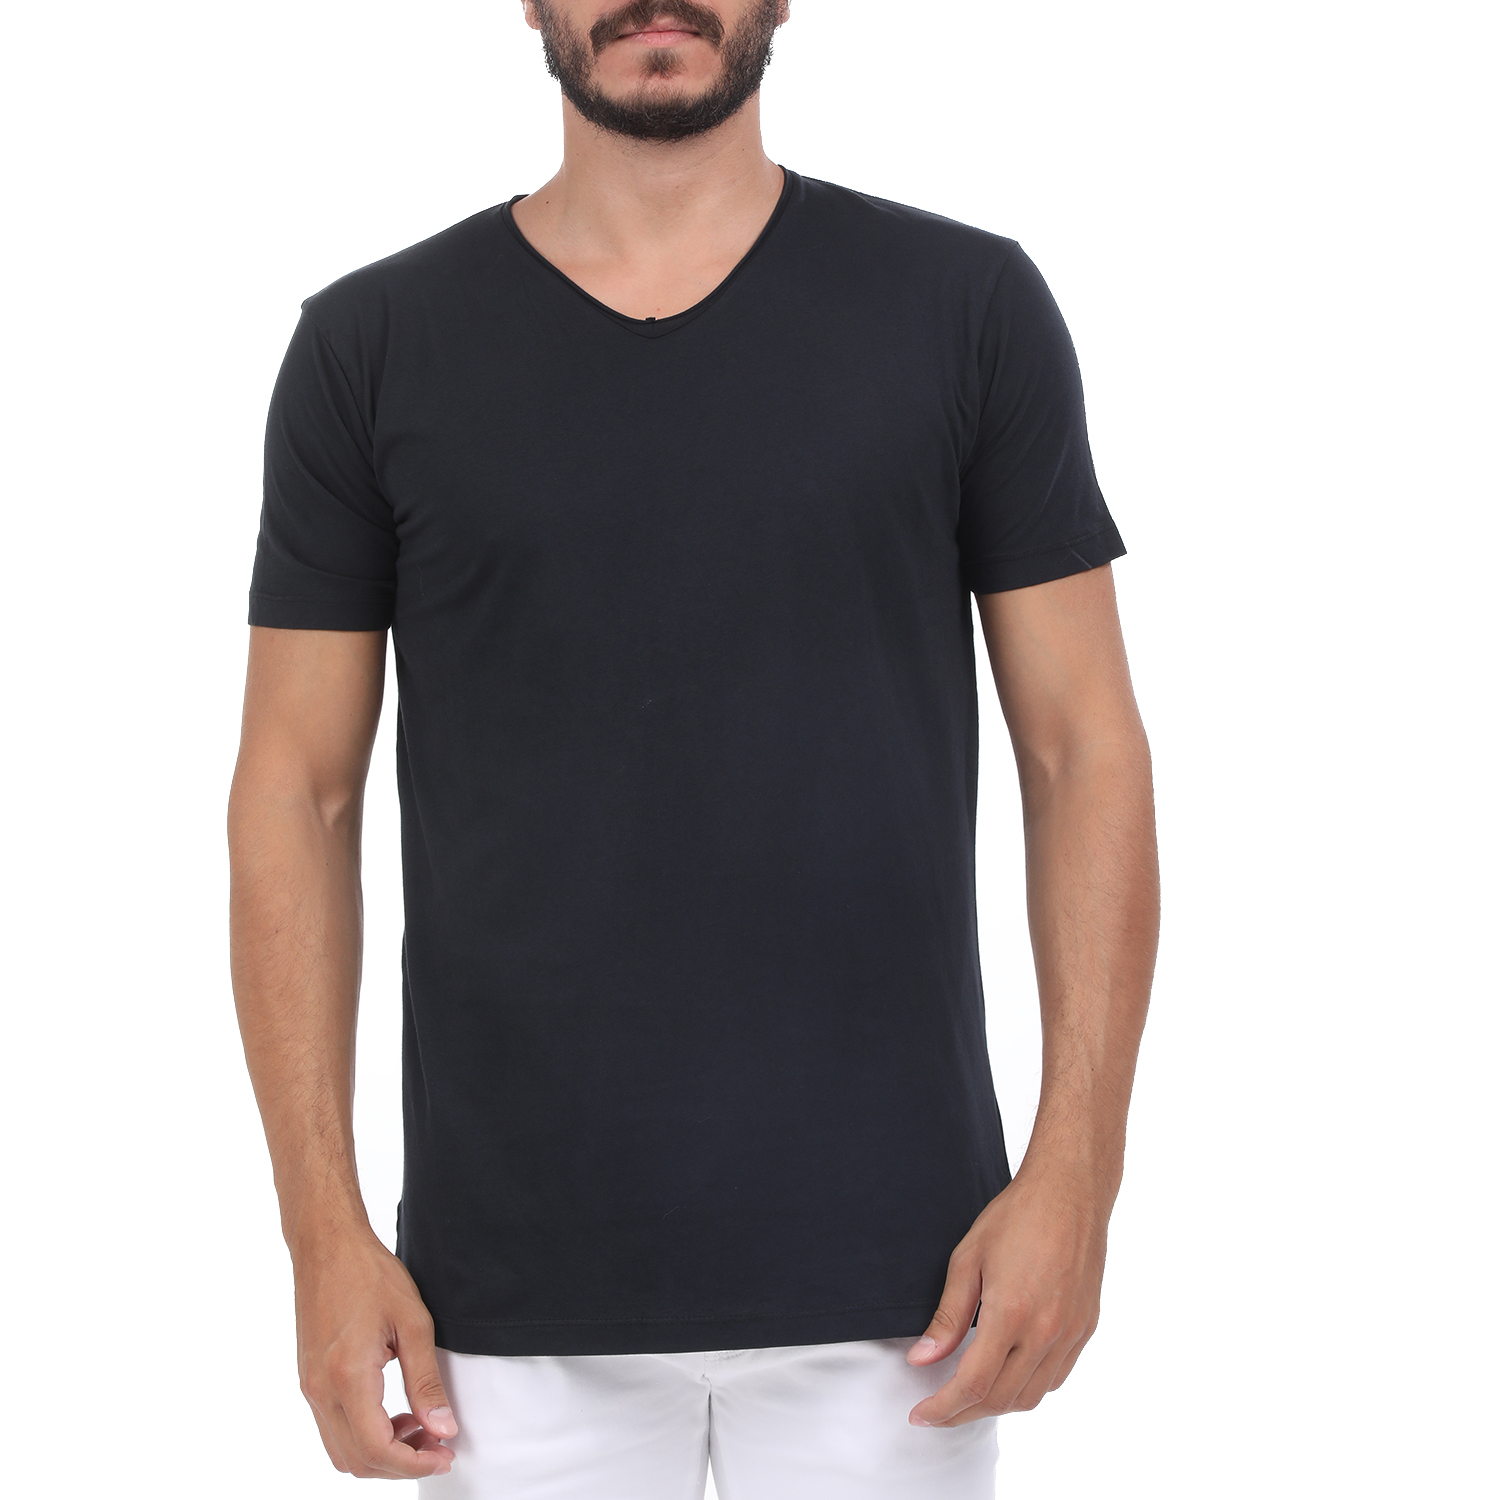 Ανδρικά/Ρούχα/Μπλούζες/Κοντομάνικες BATTERY - Ανδρική μπλούζα BATTERY SOLID GARMEN μαύρη